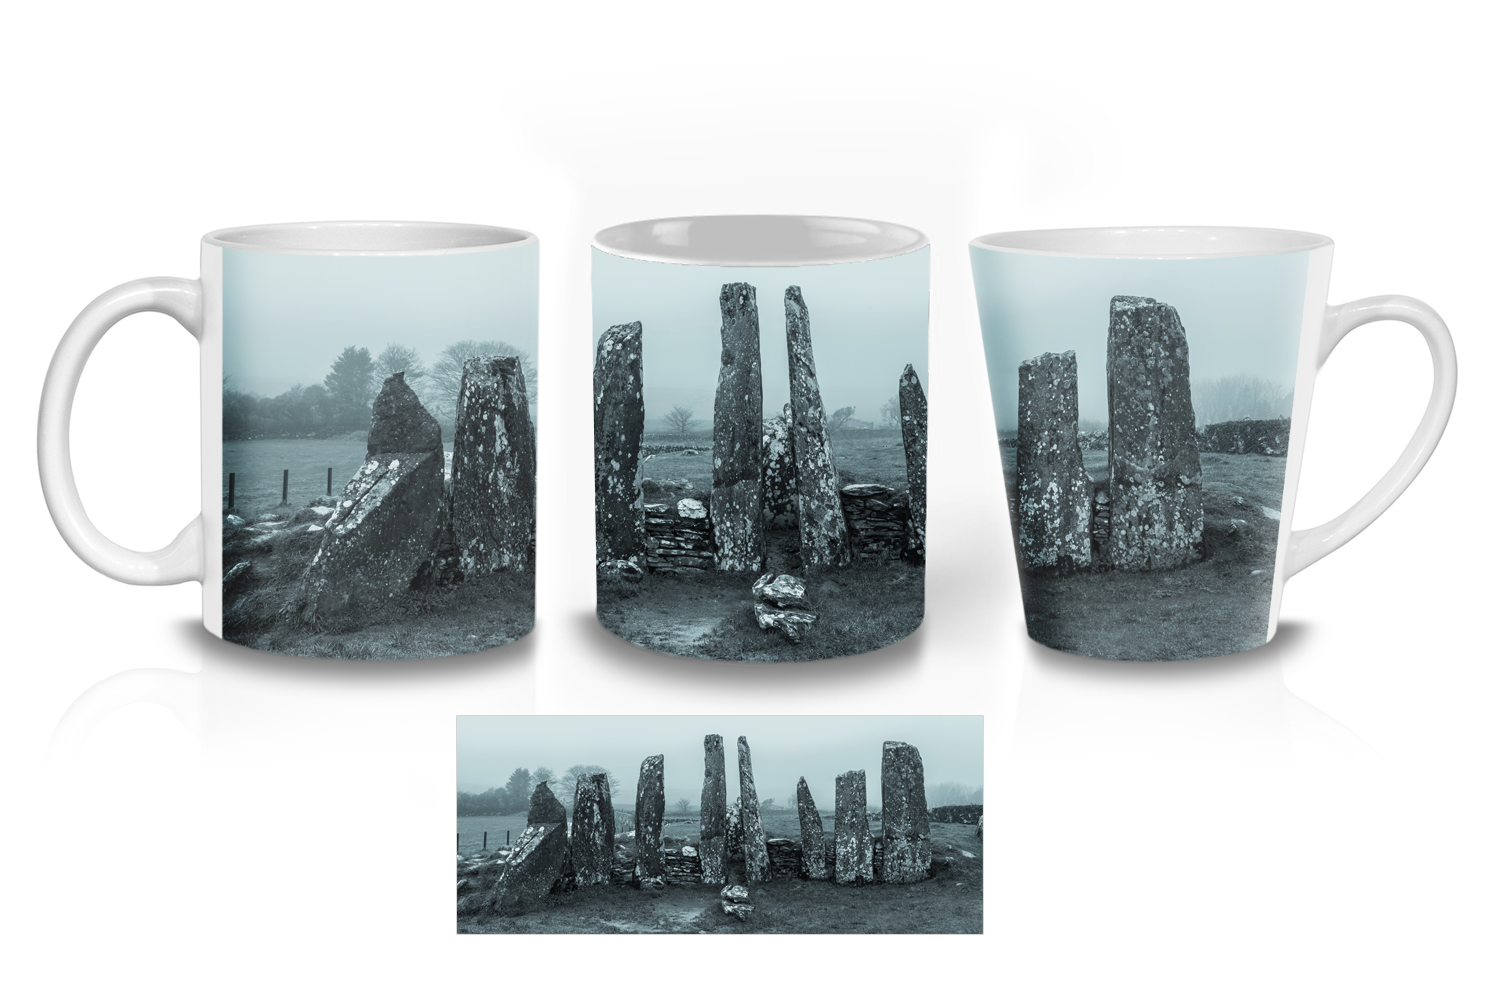 Cairnholy Ceramic Mug Sets